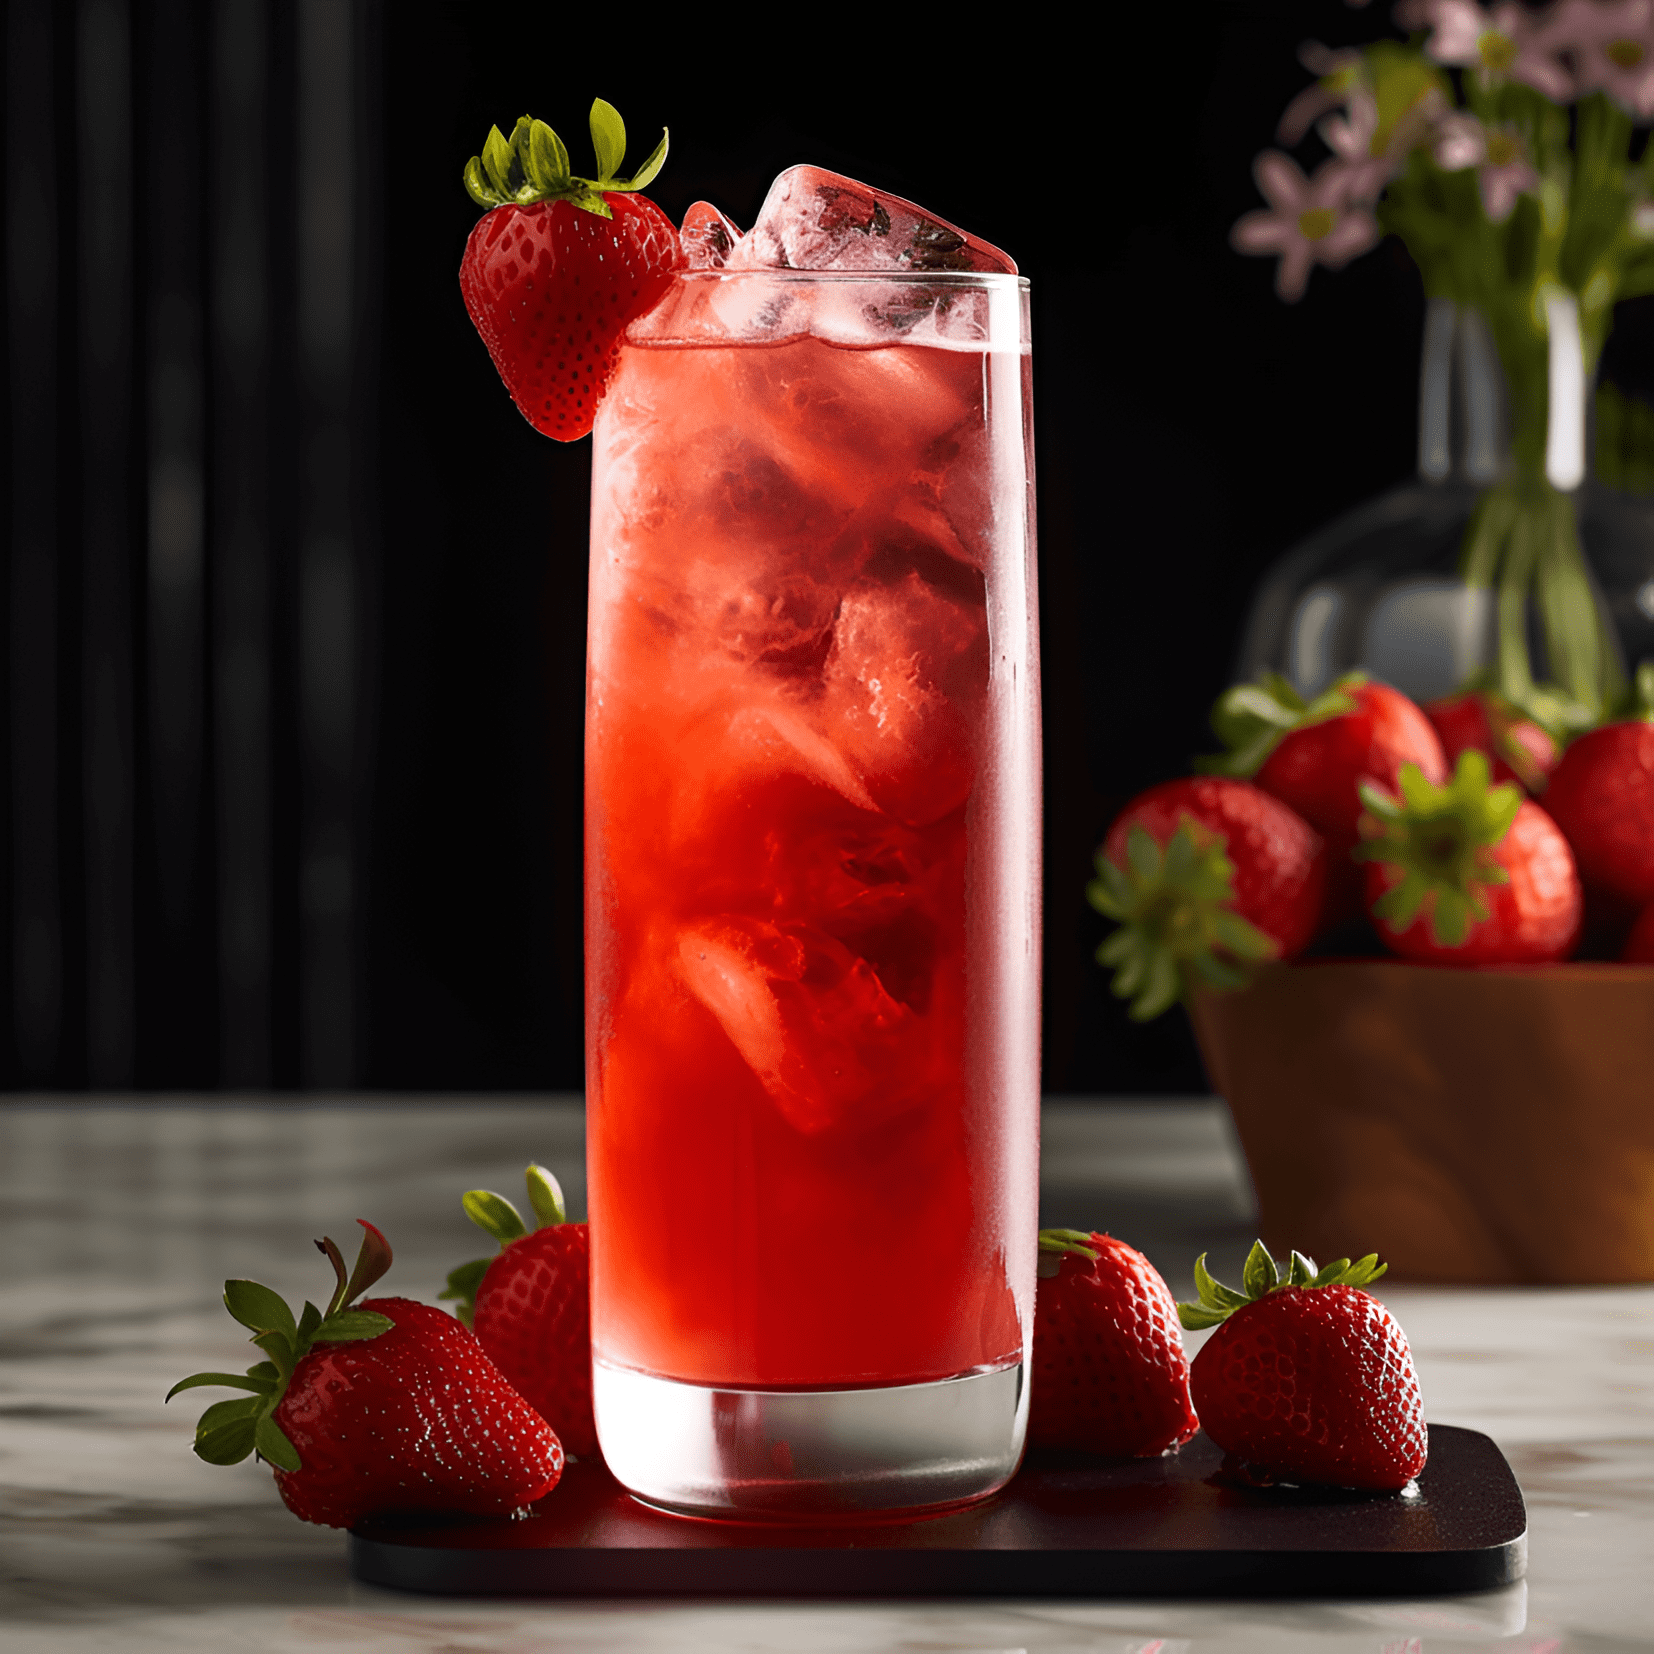 Strawberry Fields Cóctel Receta - El cóctel Strawberry Fields tiene un sabor dulce y ligeramente ácido, con las fresas frescas proporcionando una explosión de sabor afrutado. La bebida es ligera y refrescante, con un toque de cítricos del jugo de limón y una sutil dulzura del jarabe simple.